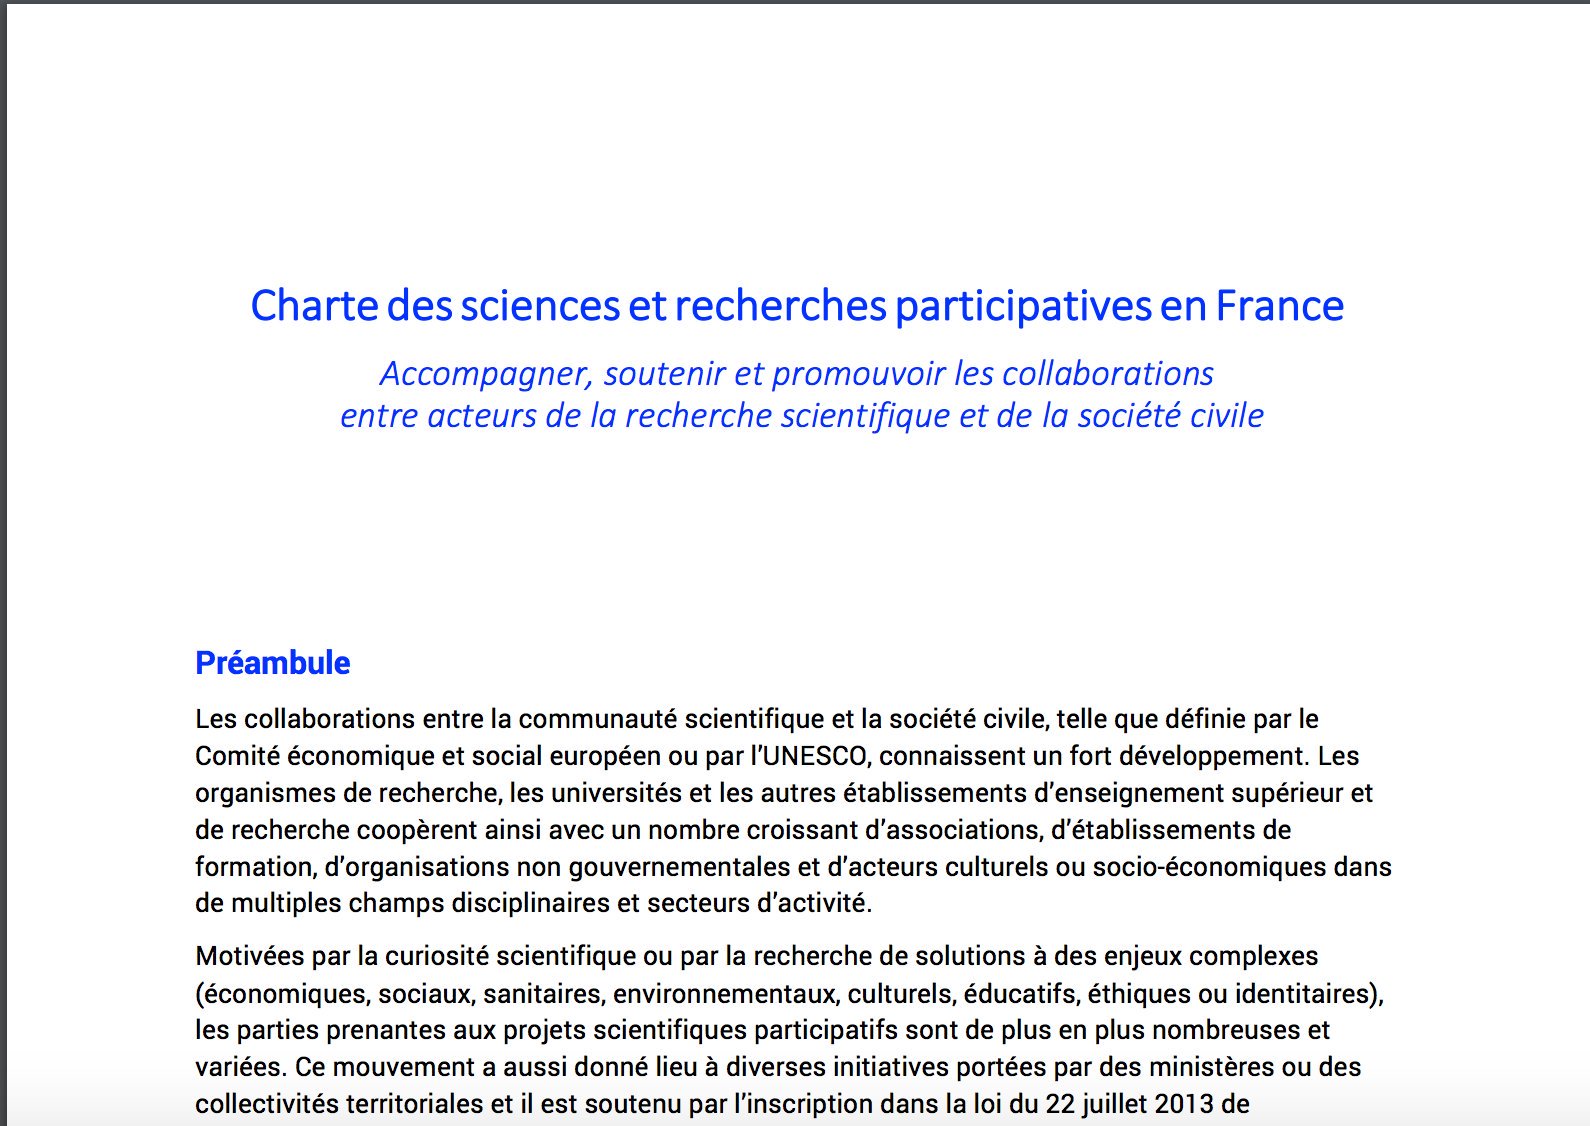 Charte des sciences et recherches participatives en France --> https://t.co/h3QS8gyNZ2 #ParticiperParticipez https://t.co/iSnxpthWfw